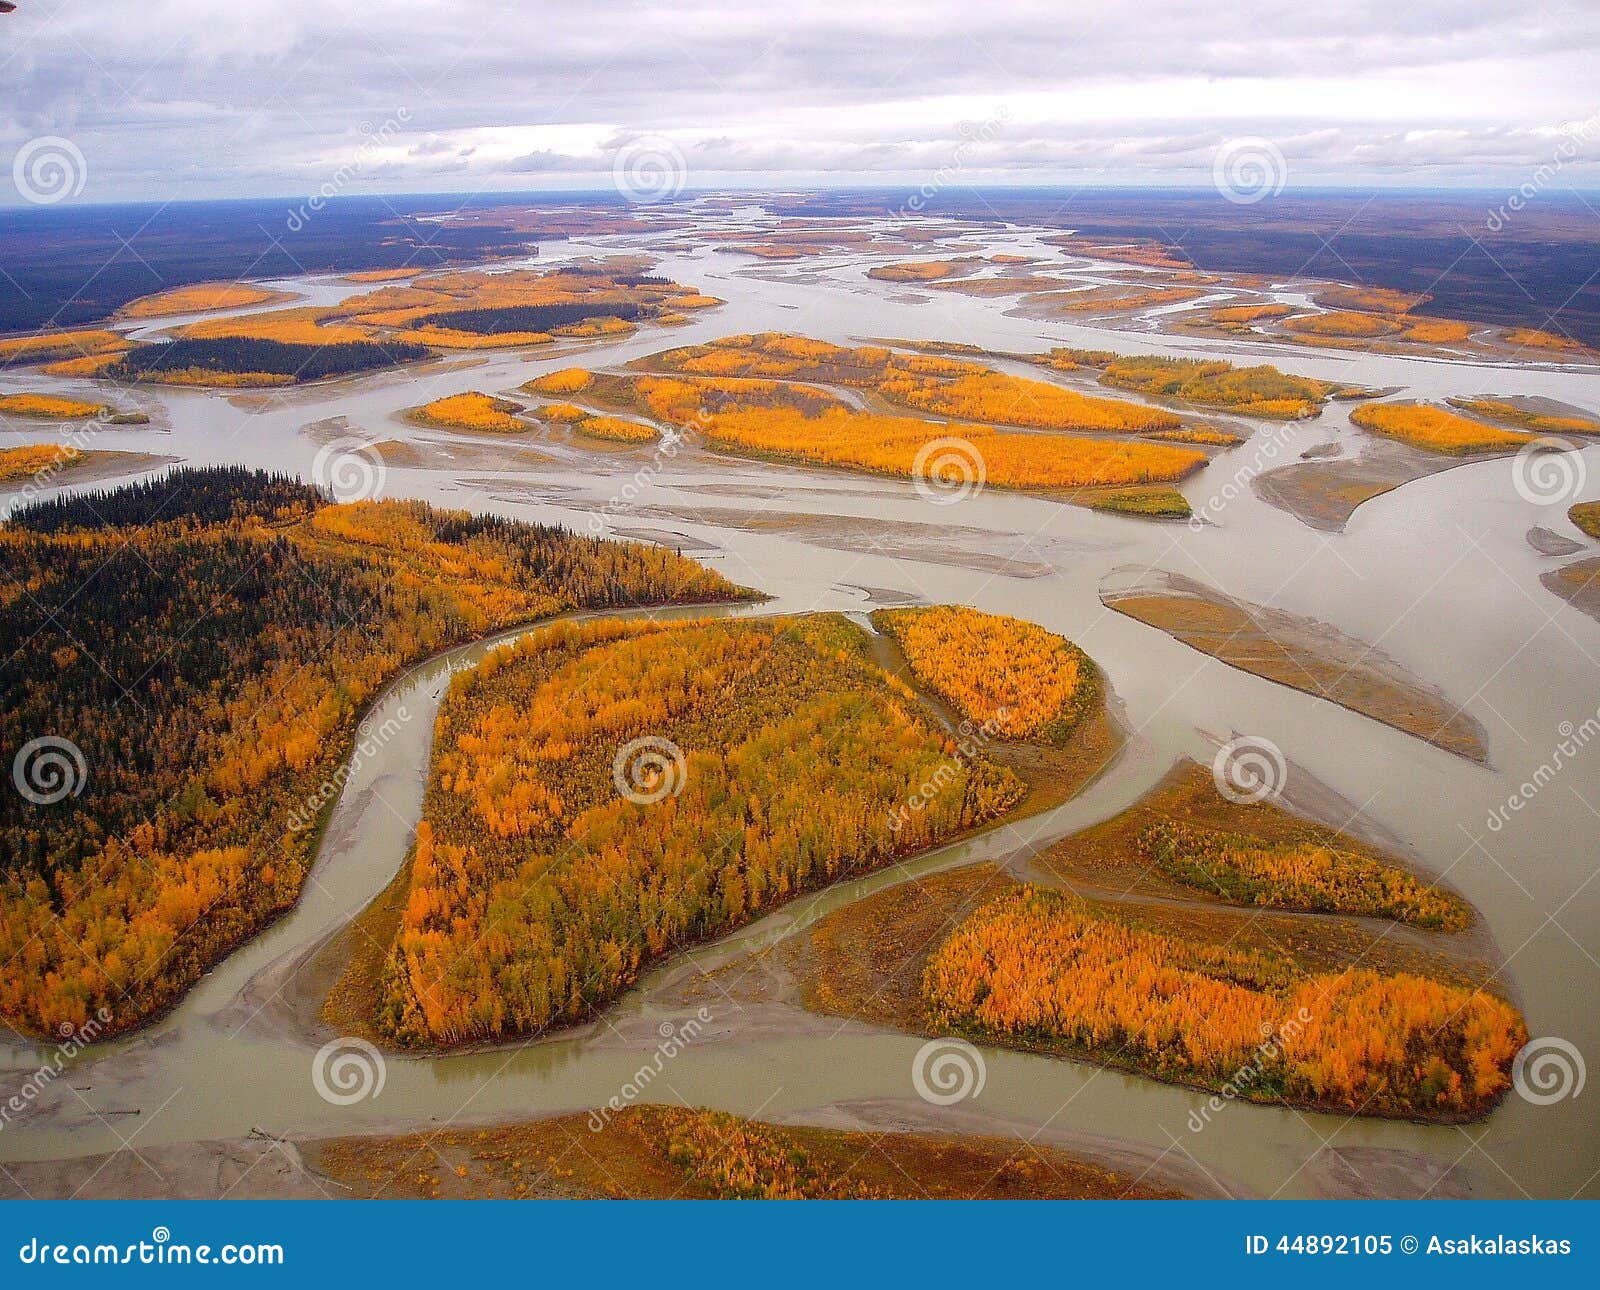 yukon river alaska